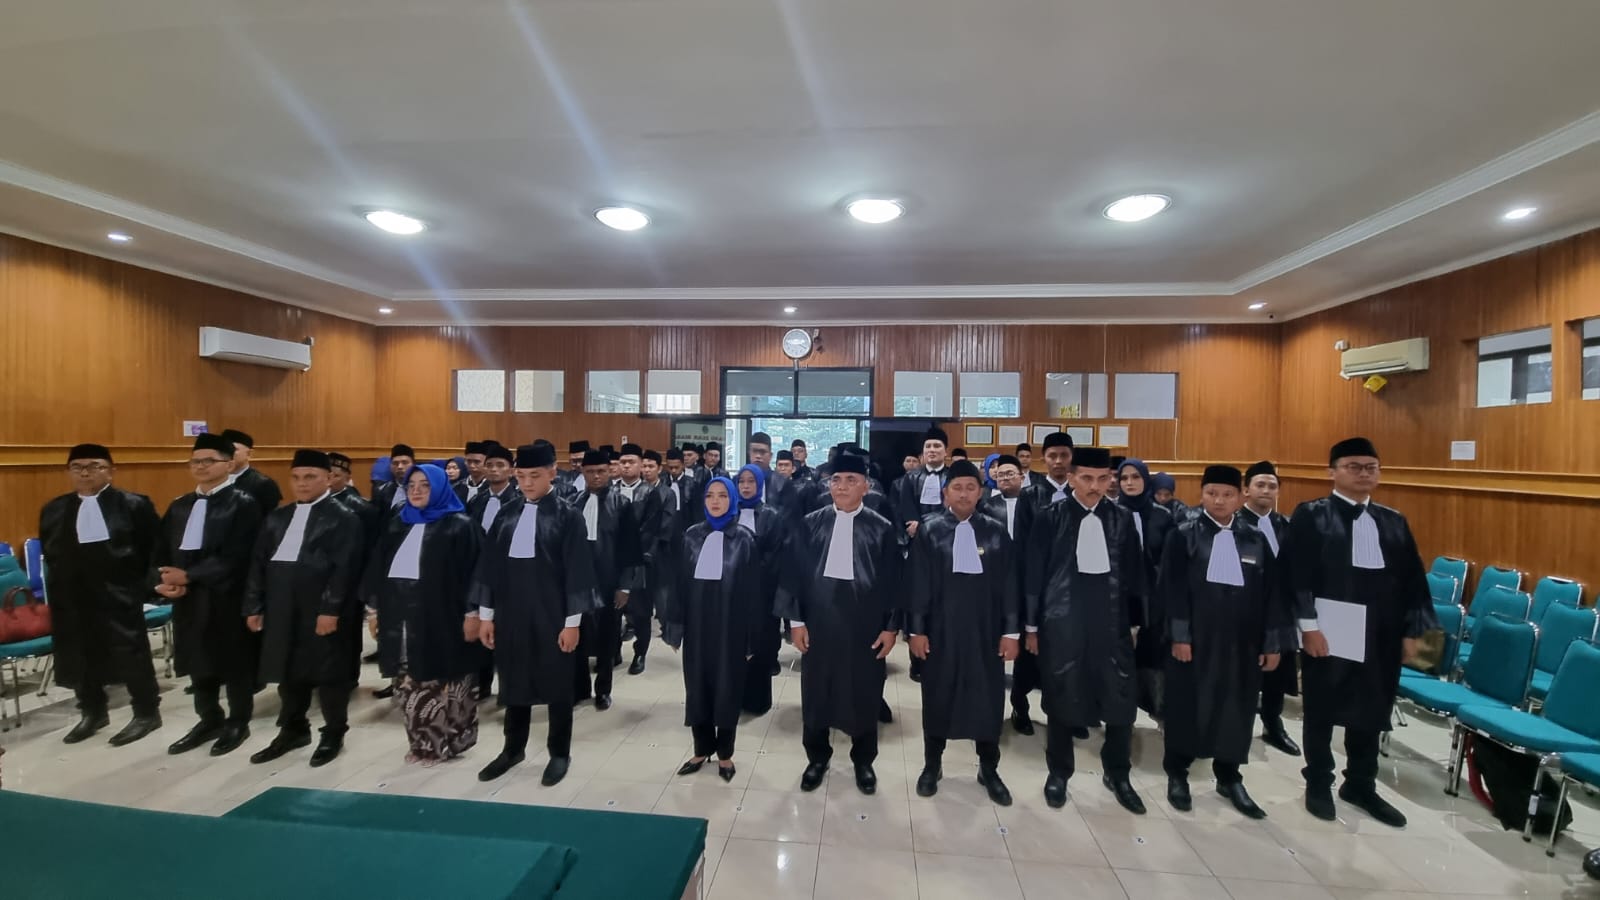 PERADI SAI DPC Padang telah melaksanakan Pelantikan dan Pengangkatan Sumpah Advokat di Pengadilan Tinggi Padang, pada tanggal 07 Maret 2024, dengan jumlah 68 Advokat yang dilantik.